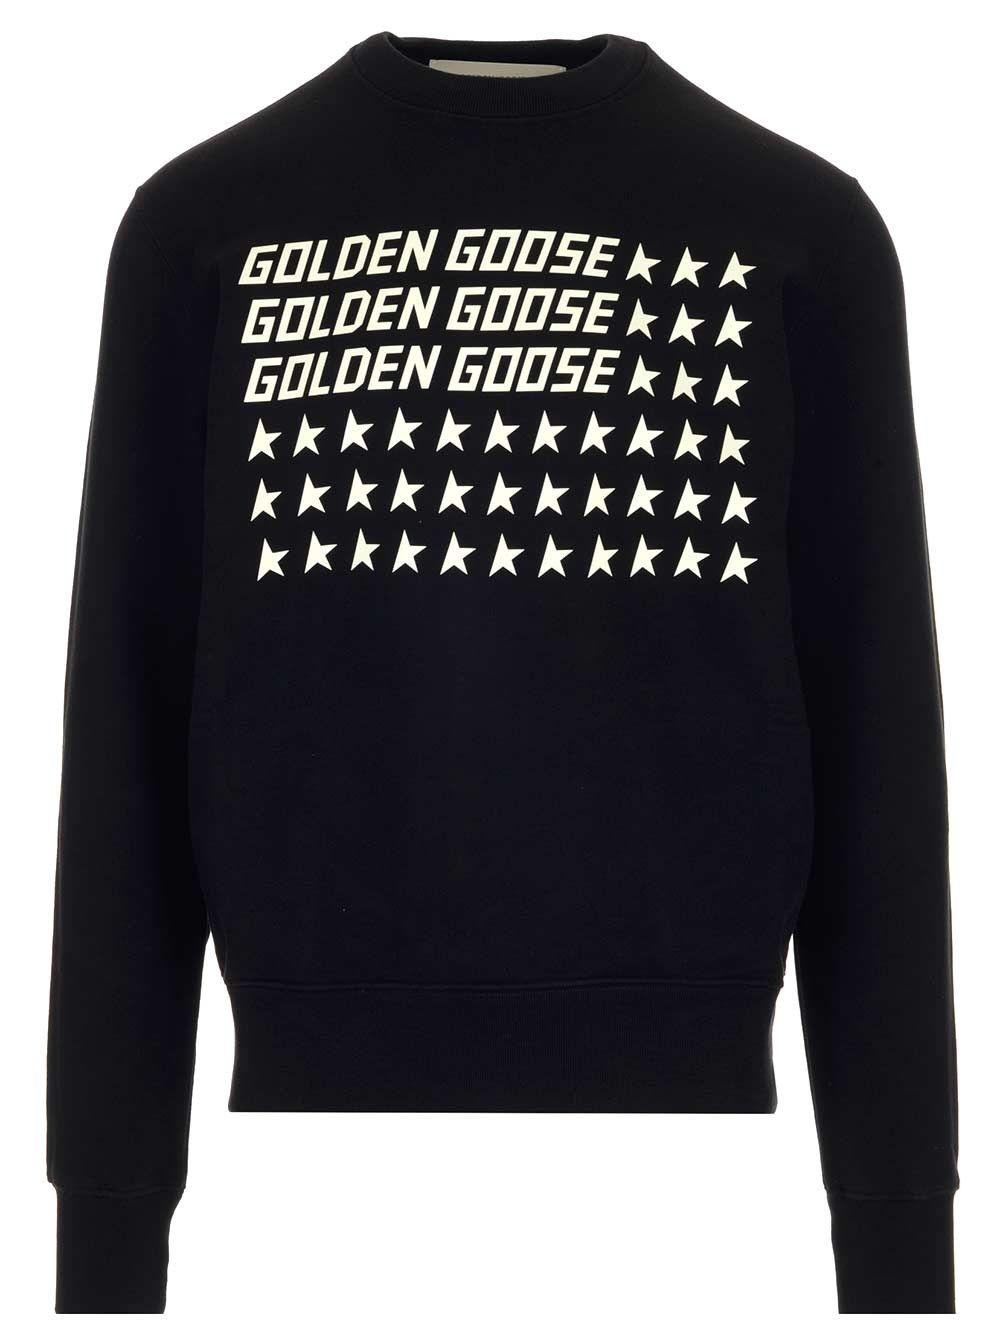 Golden Goose Deluxe Brand Cotton Sweatshirt in Black for Men - Lyst